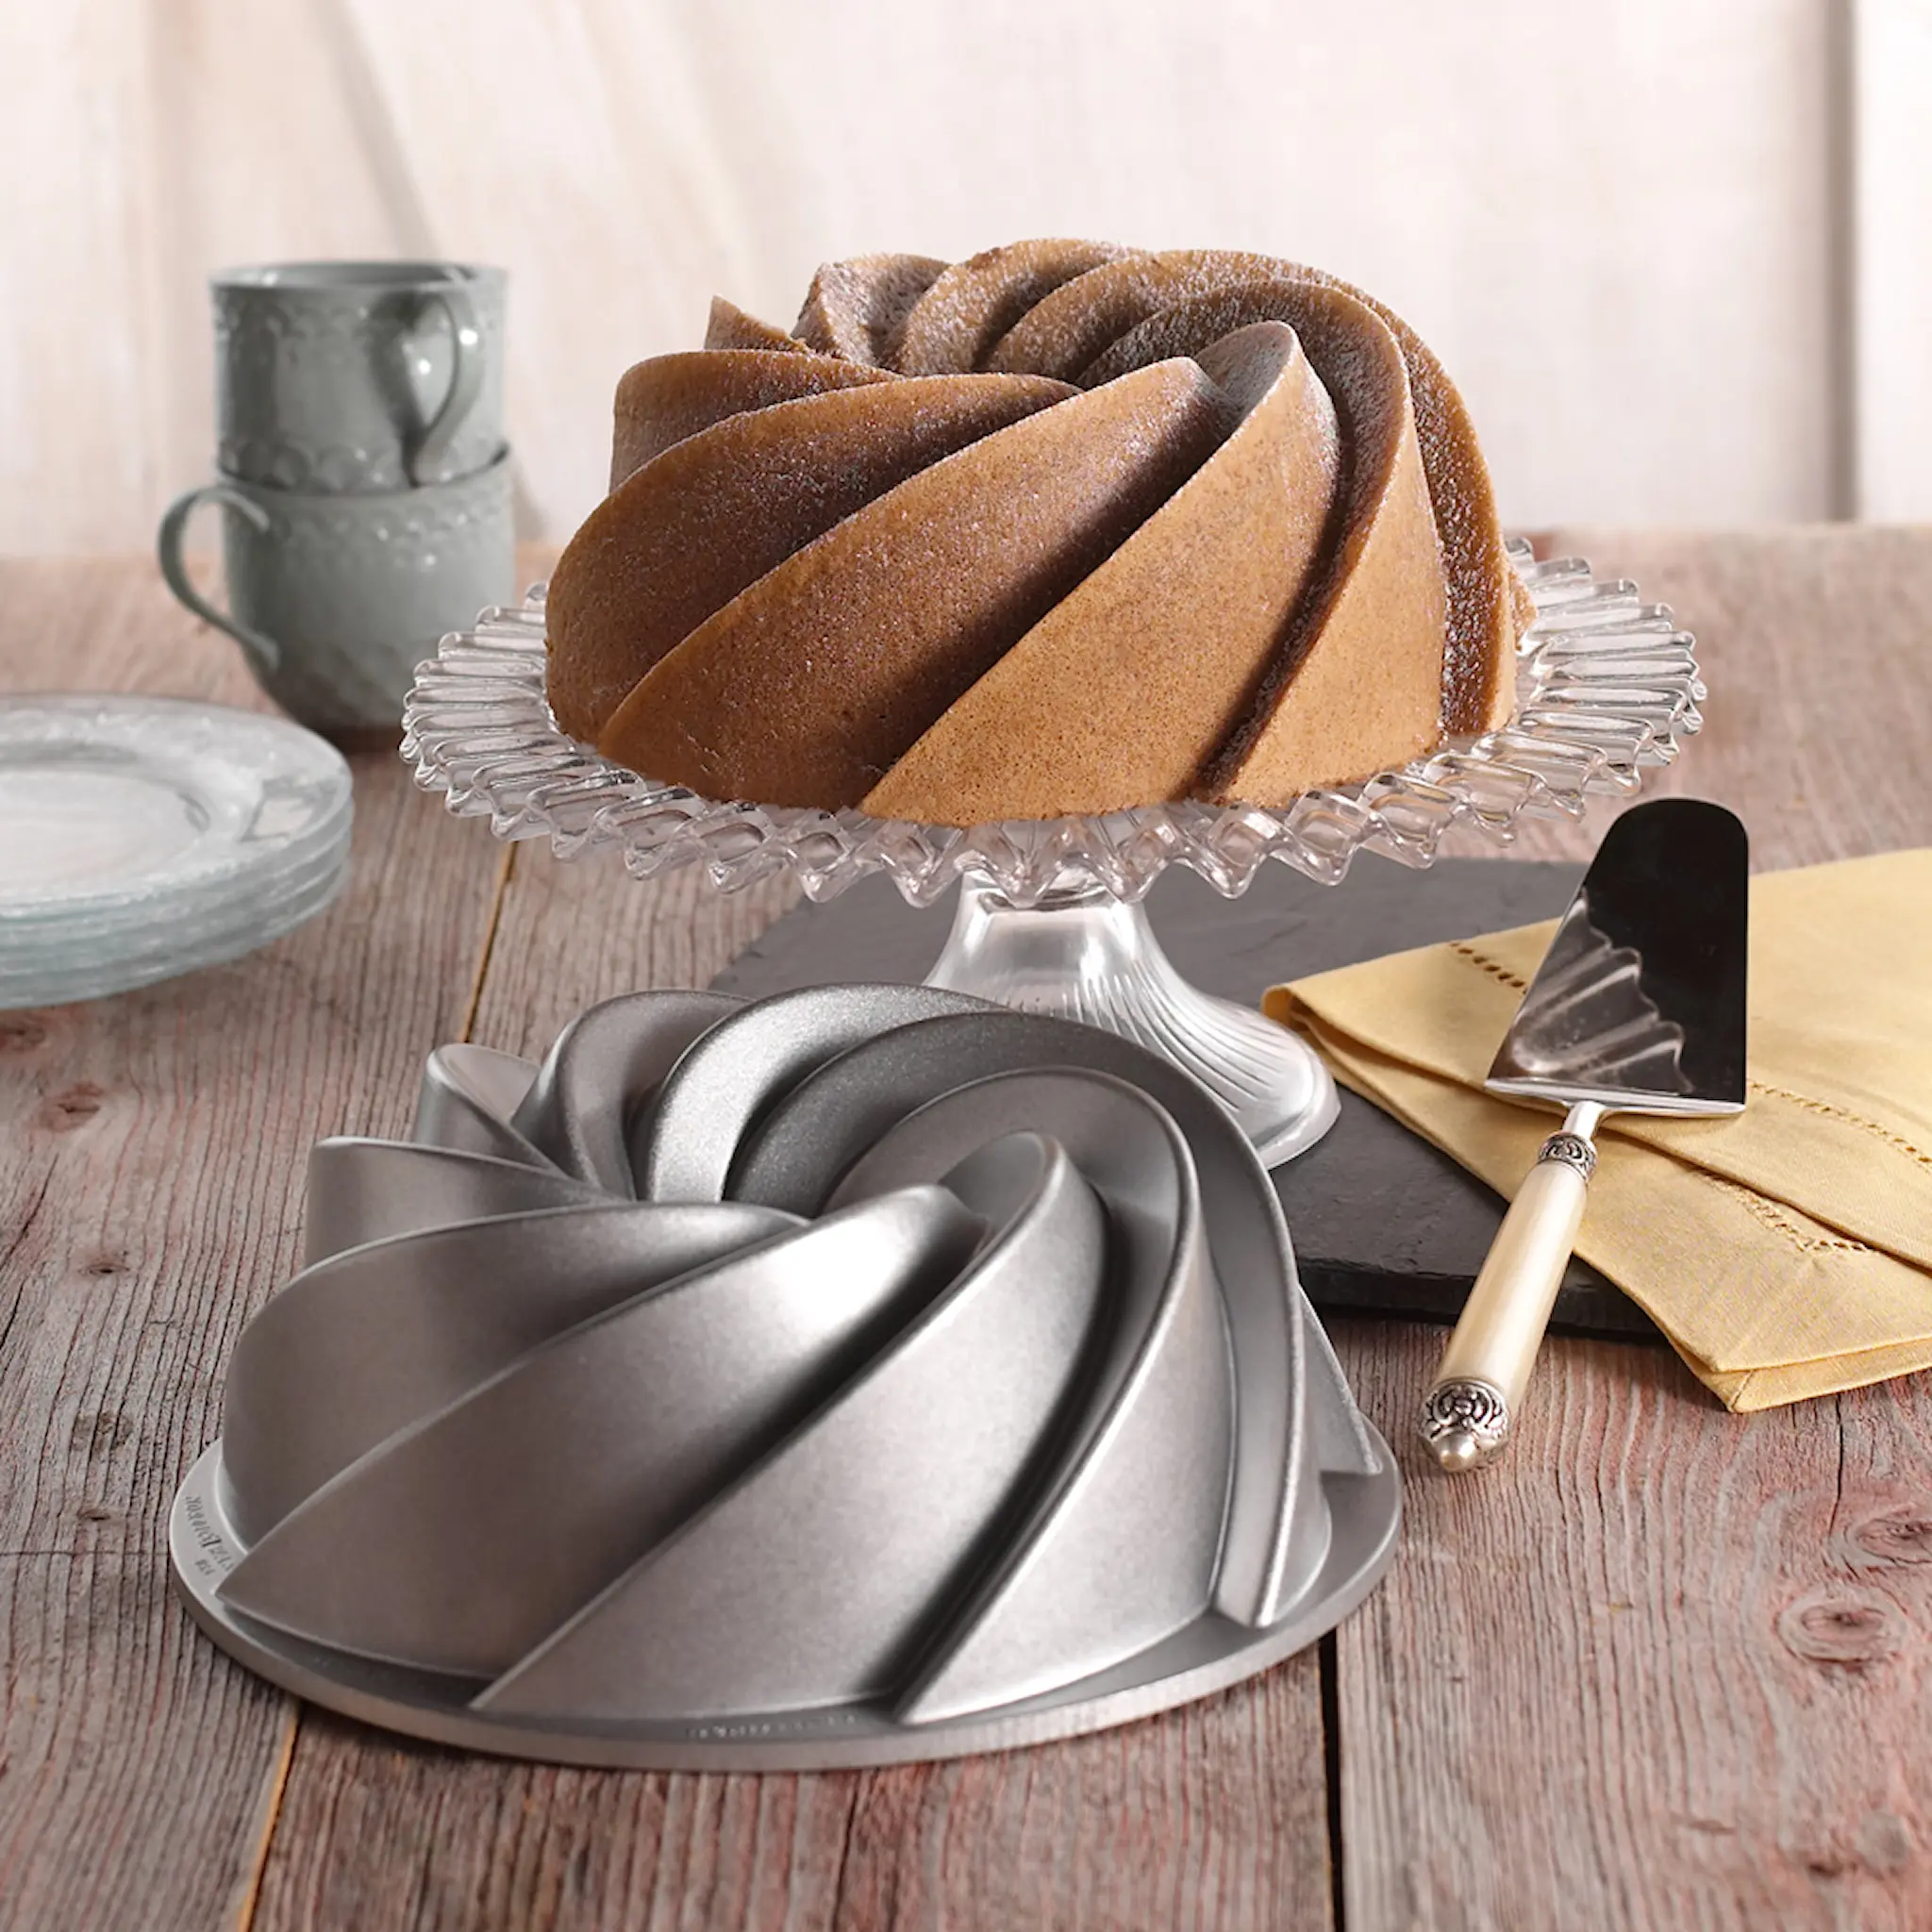 Nordic Ware Bakeform heritage